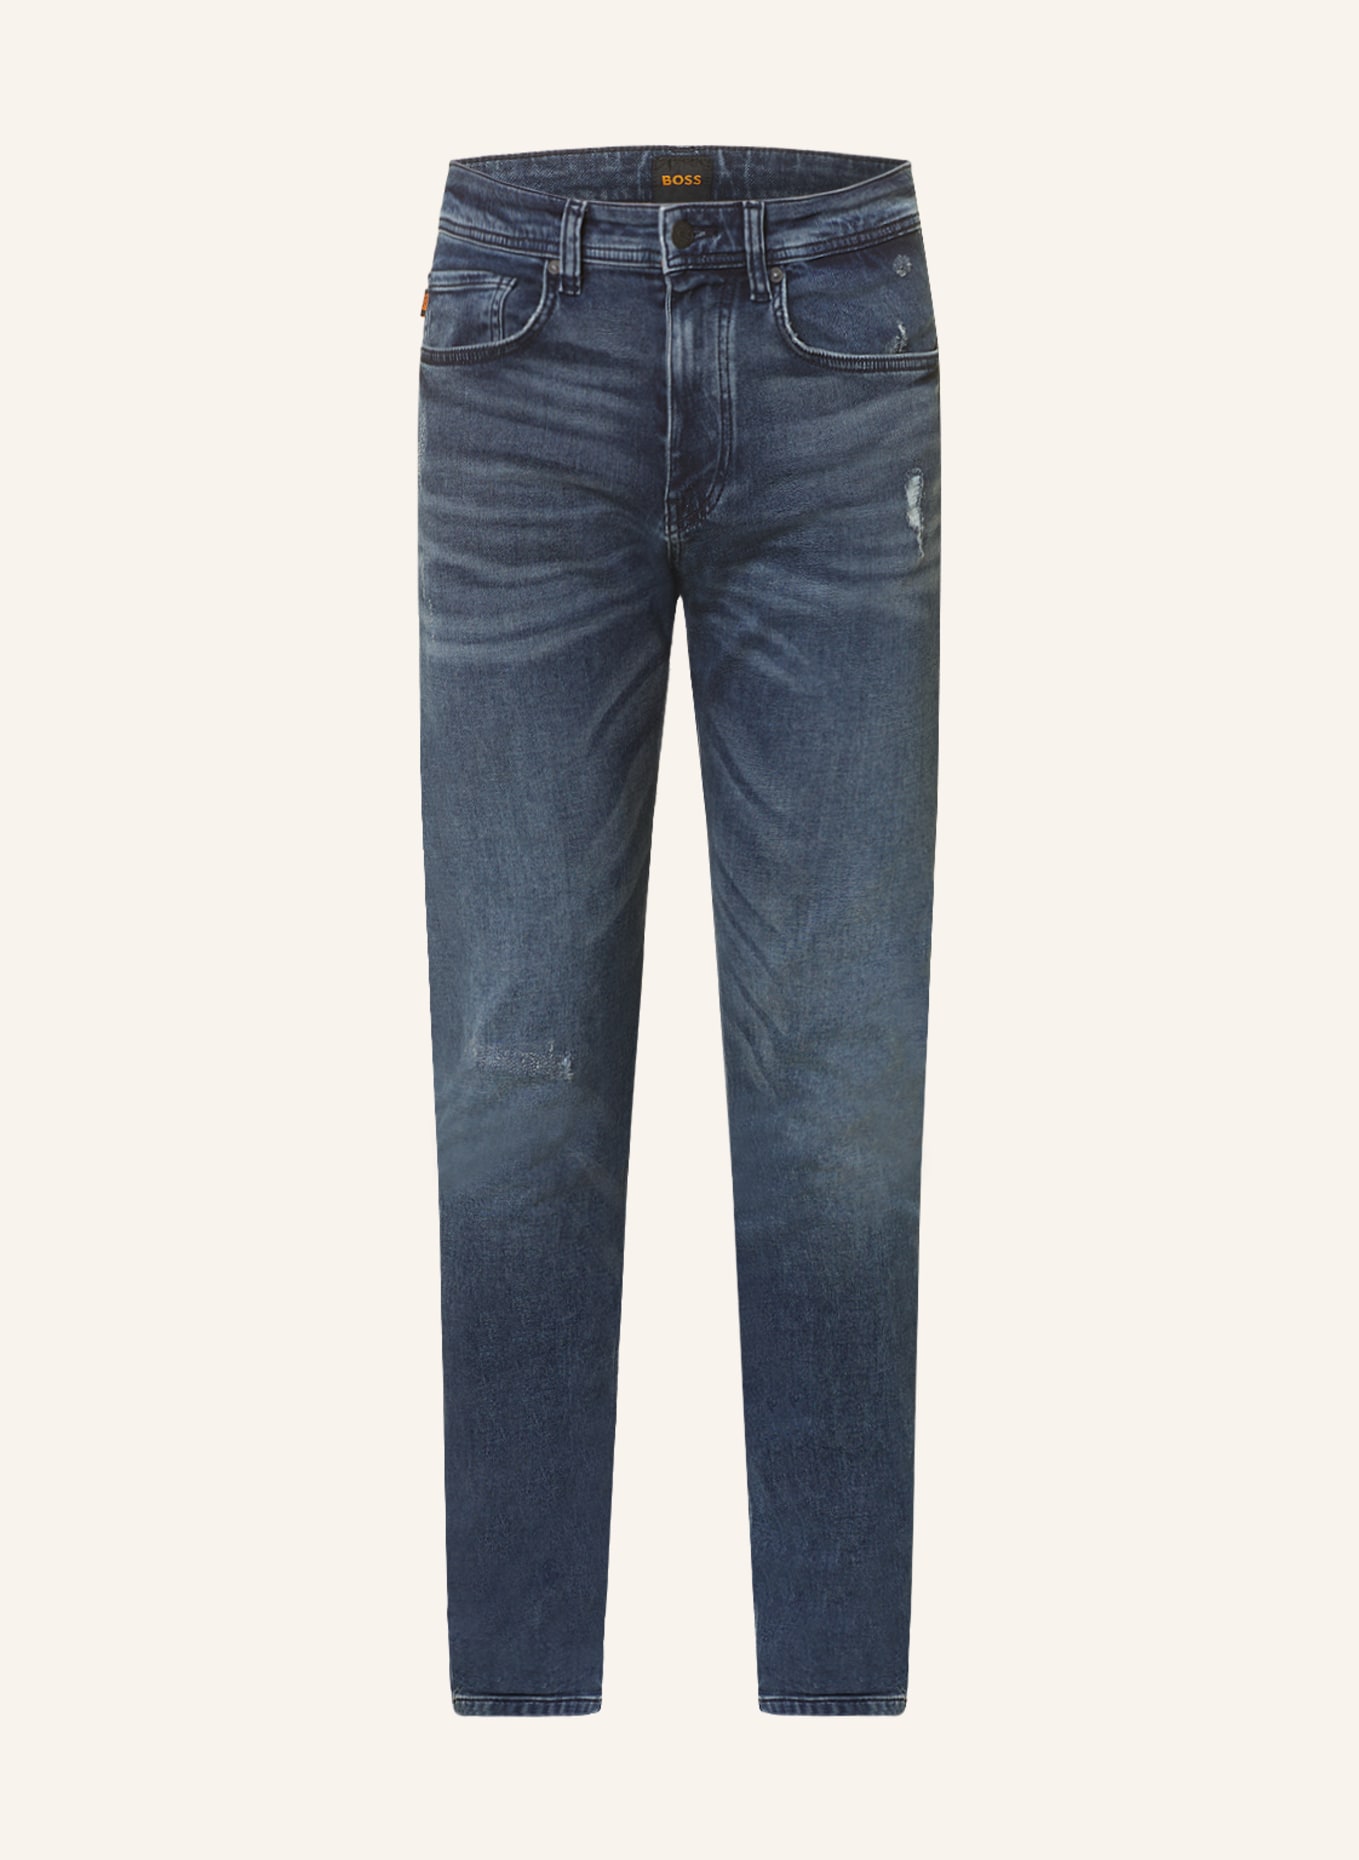 BOSS Jeans TABER Tapered Fit, Farbe: 423 MEDIUM BLUE (Bild 1)